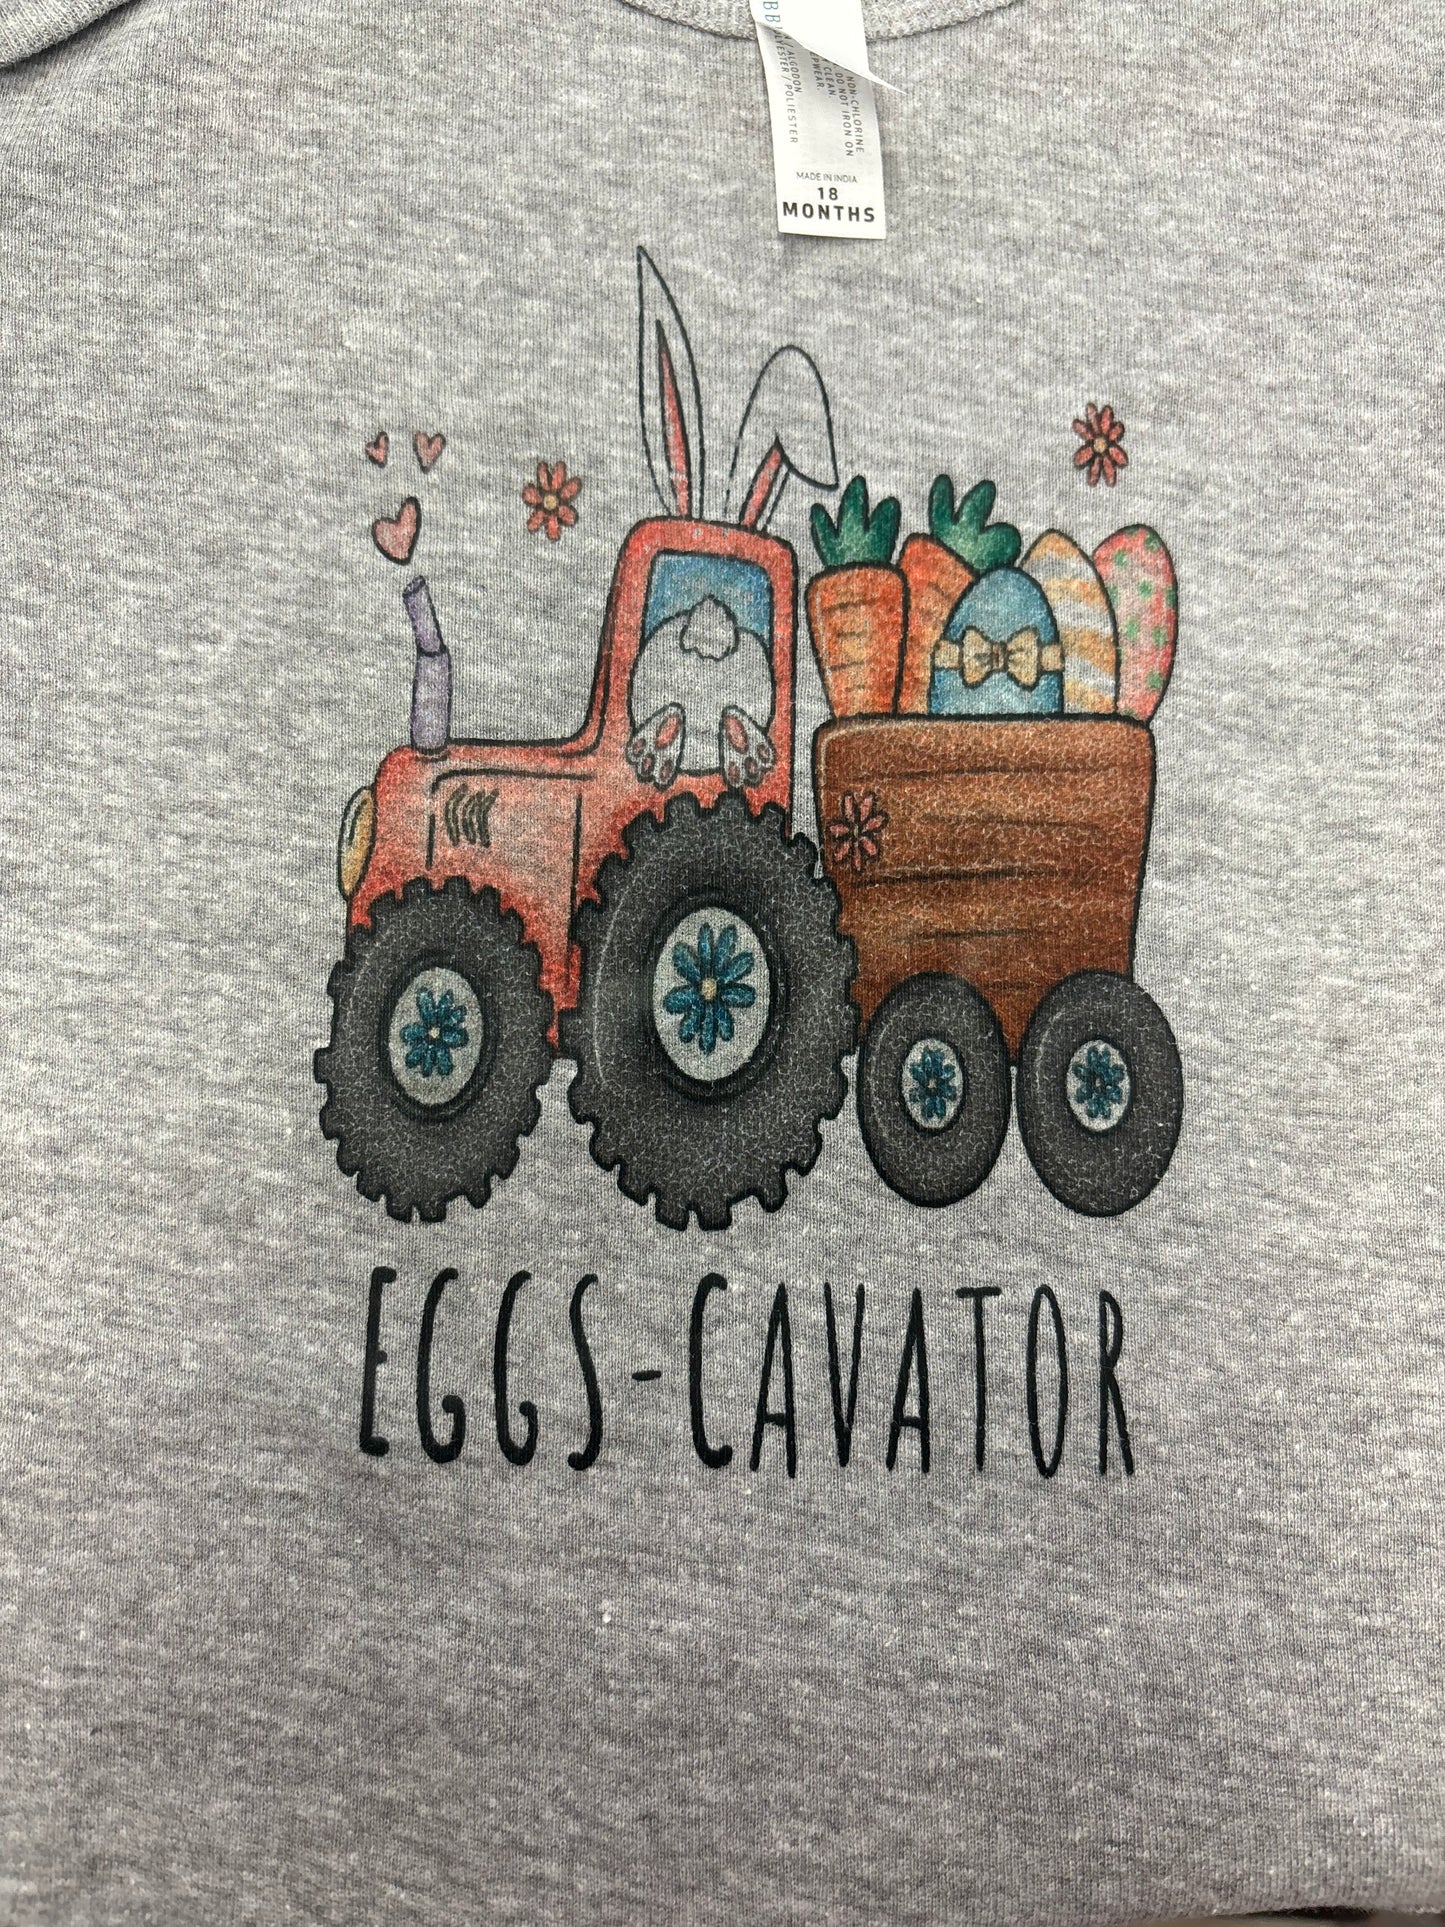 Kids Eggscavator Shirt